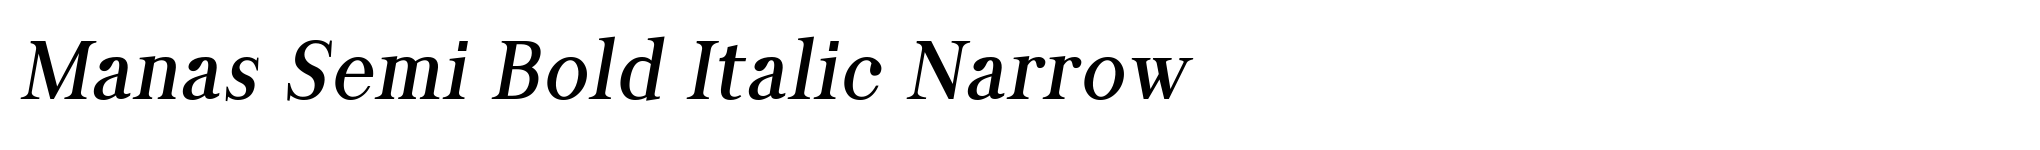 Manas Semi Bold Italic Narrow image